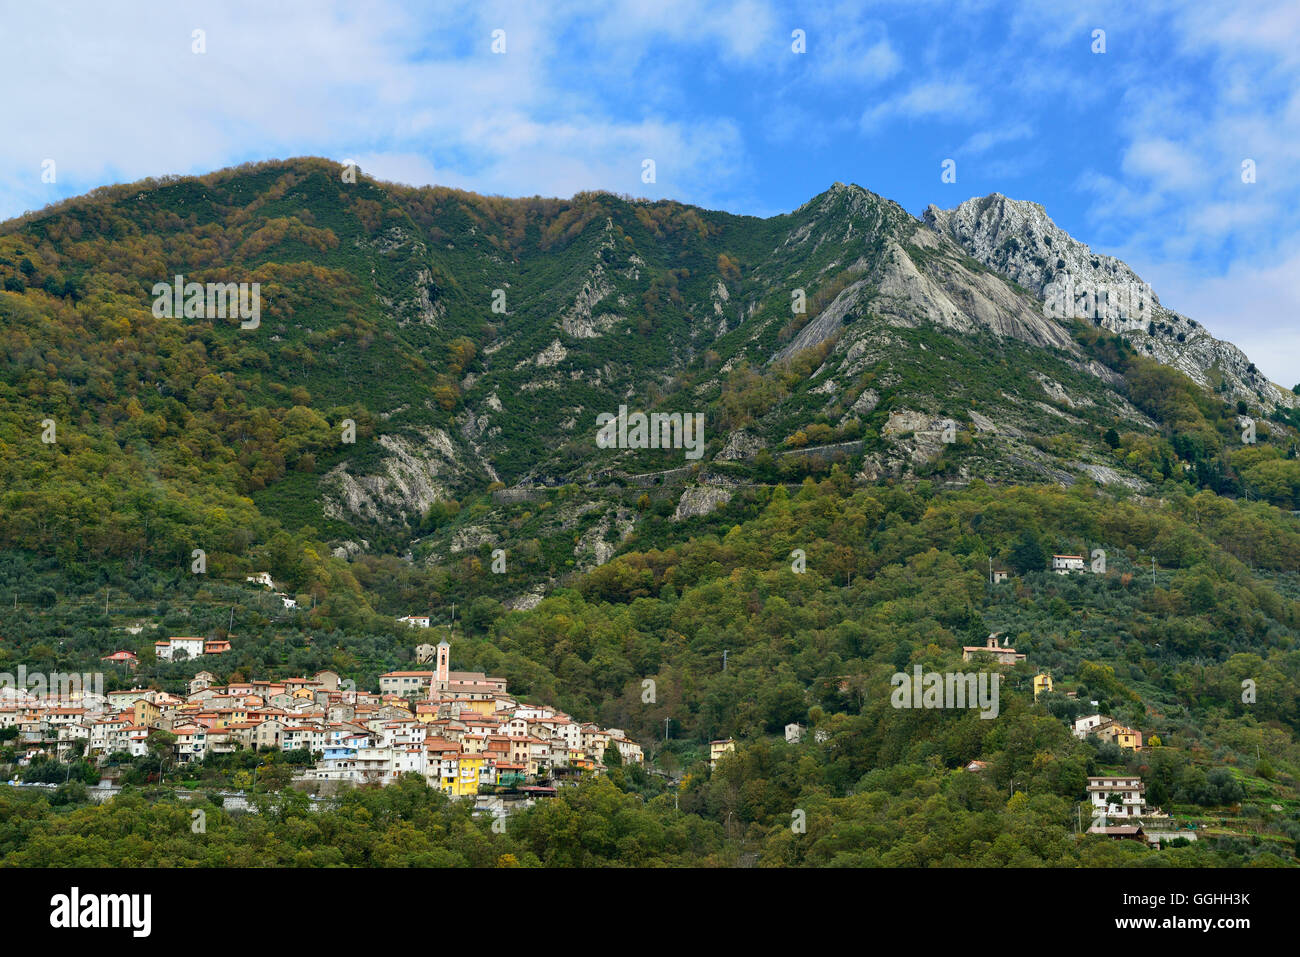 Mountain village, Antona, Apuan Alps, Tuskany, Italy Stock Photo